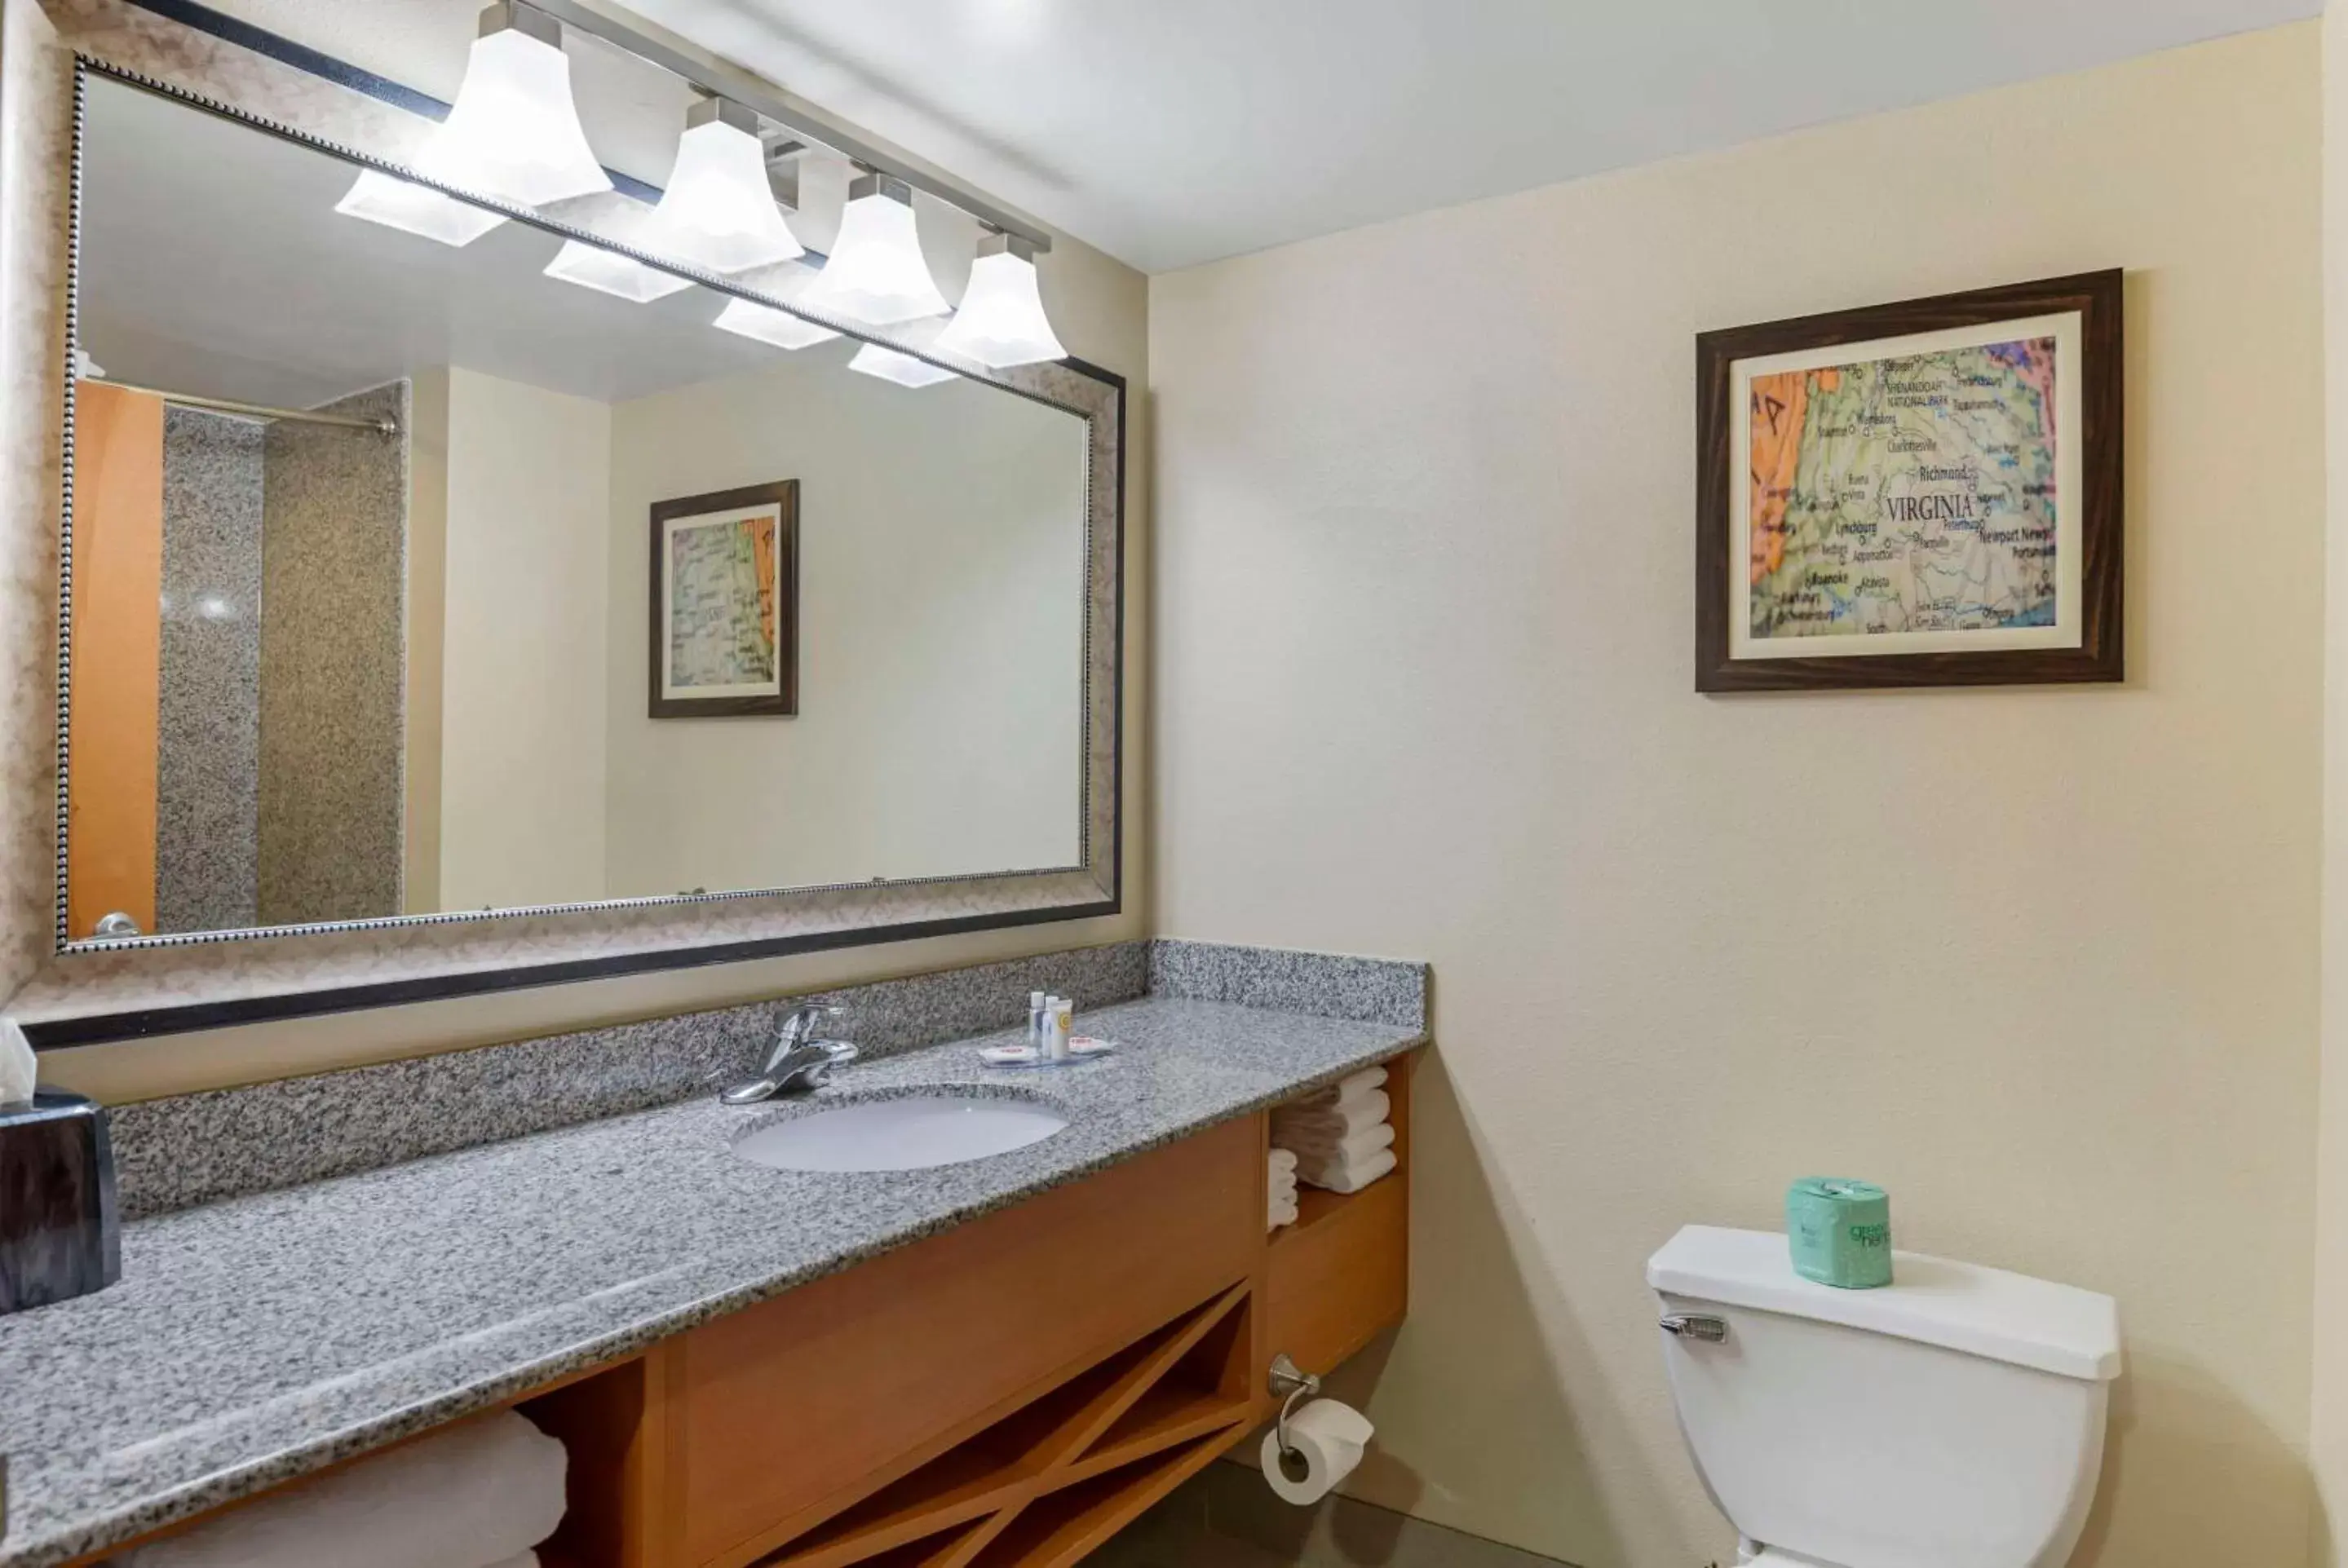 Bedroom, Bathroom in Comfort Suites at Virginia Center Commons